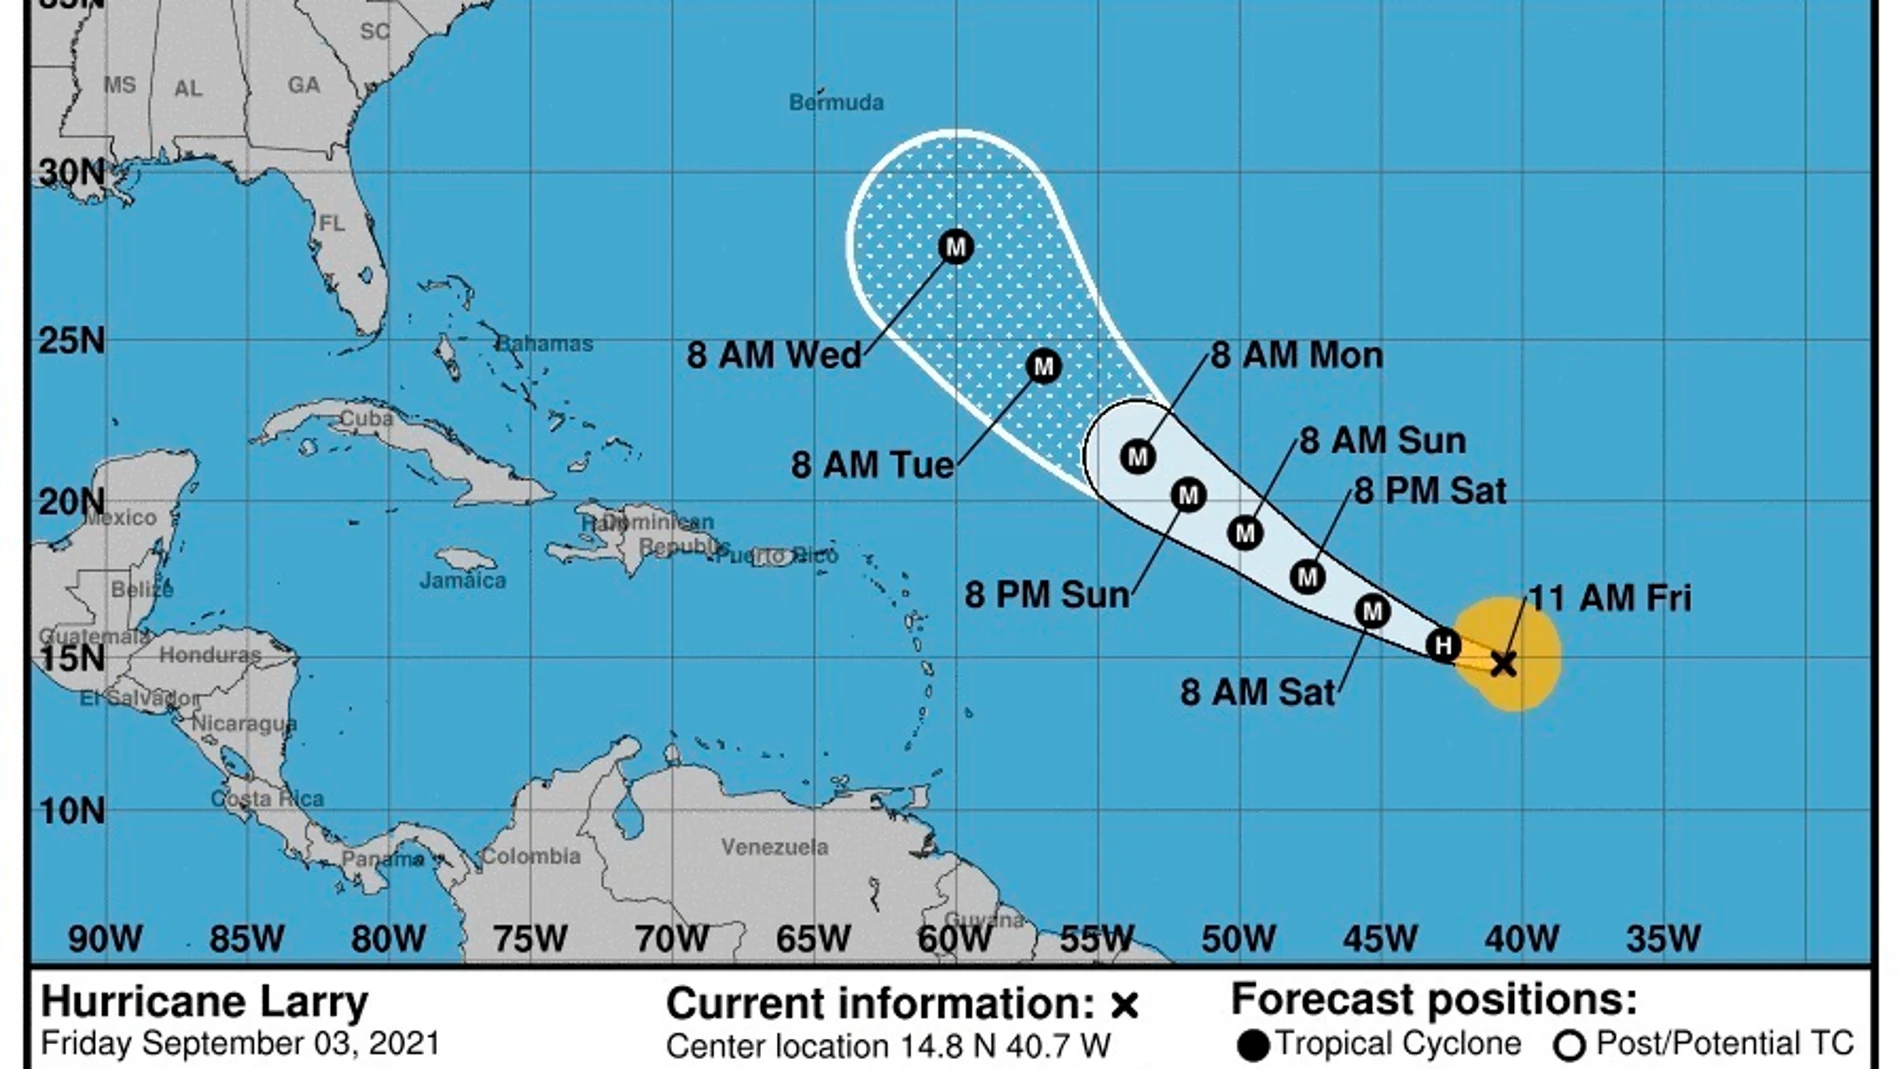 Imagen cedida por la Oficina Nacional de Administración Oceánica y Atmosférica (NOAA) a través del Centro Nacional de Huracanes (NHC) donde se muestra el pronóstico de cinco días de la trayectoria del huracán Larry en el Atlántico